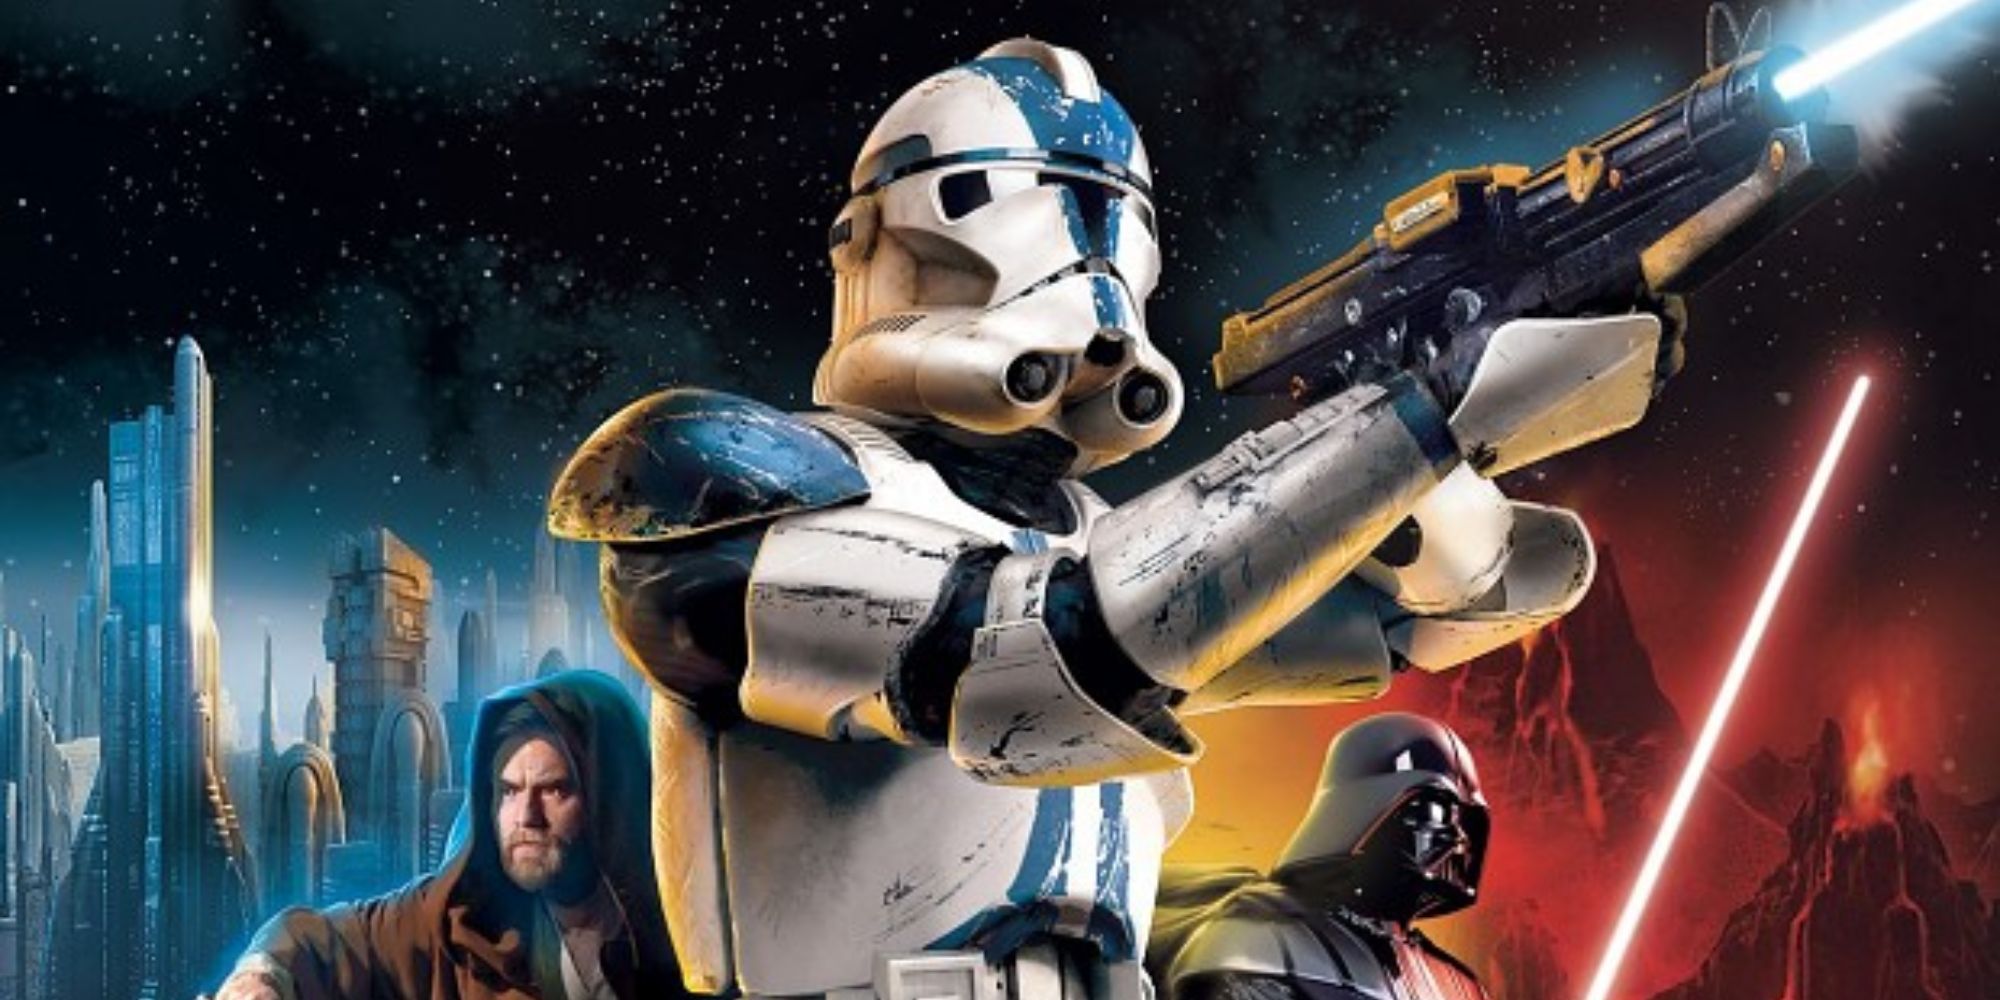 Cover art for Star Wars Battlefront 2.